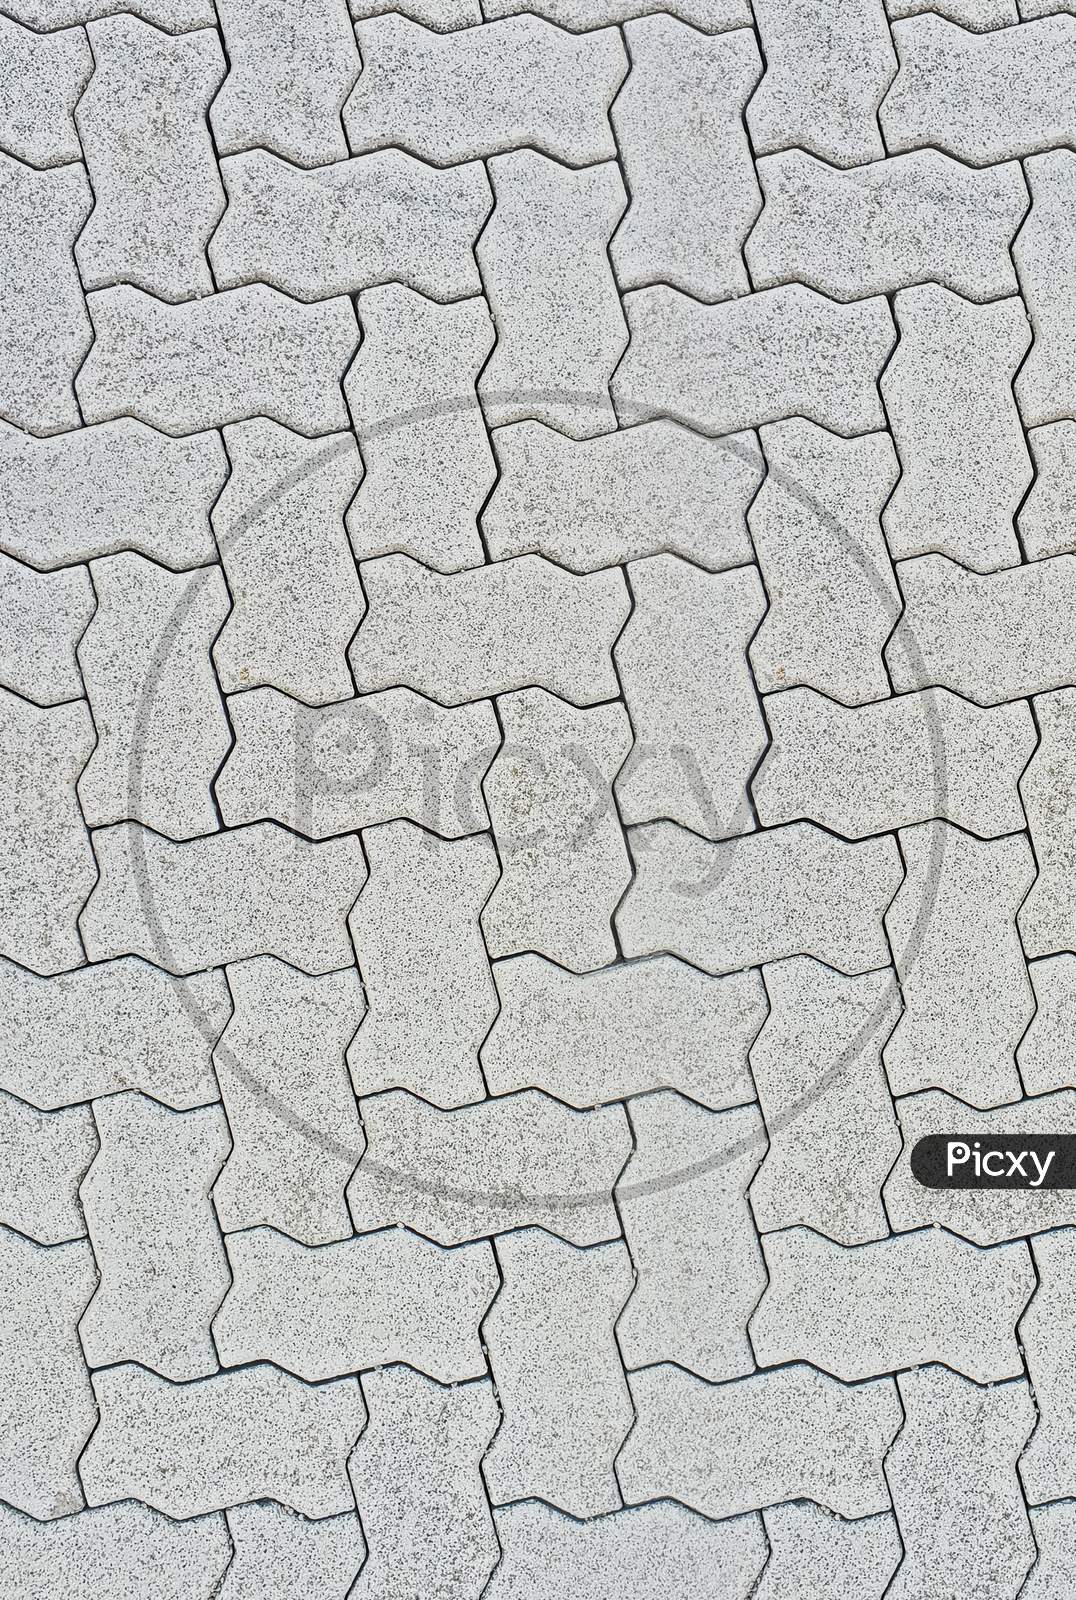 Interlocking Paver Tiles